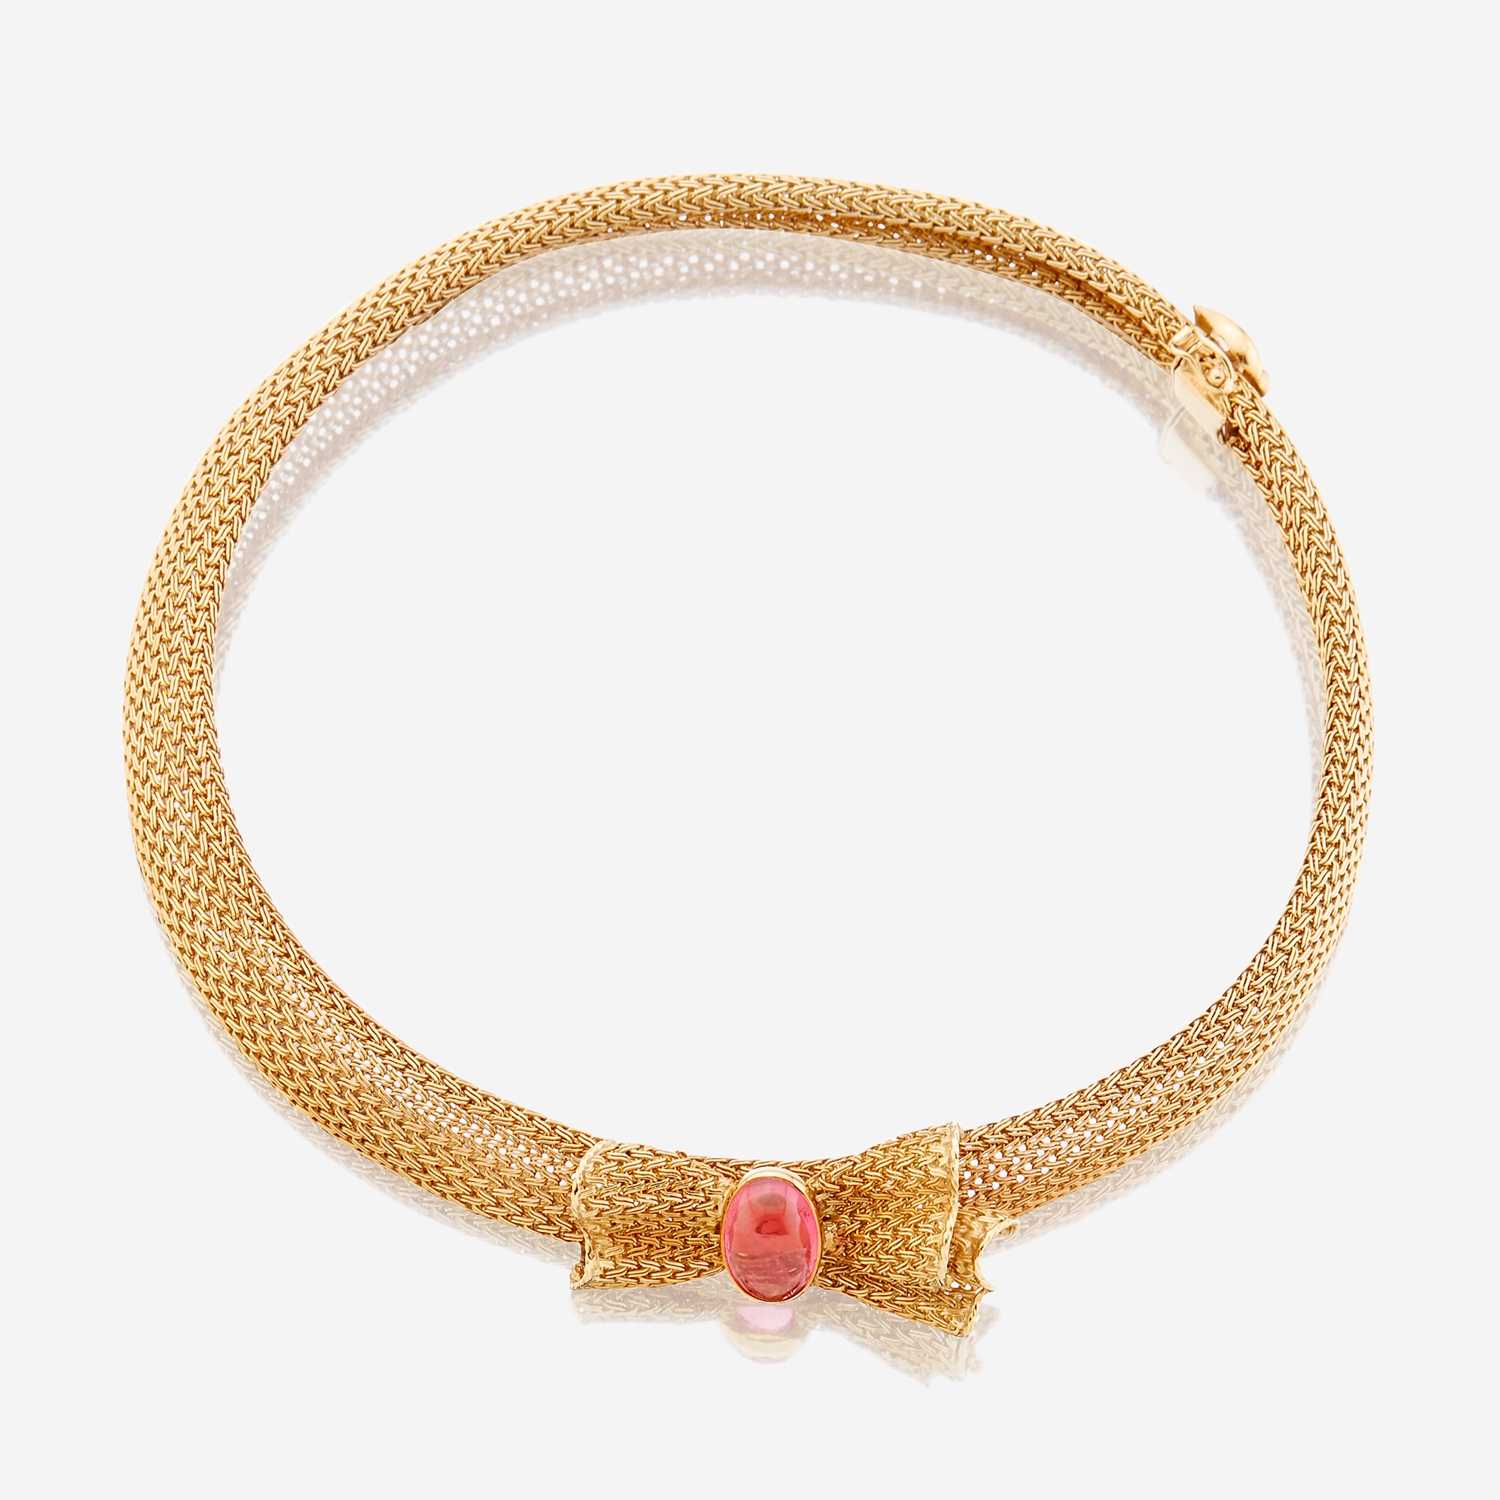 Lot 86 - An eighteen karat gold and pink tourmaline necklace